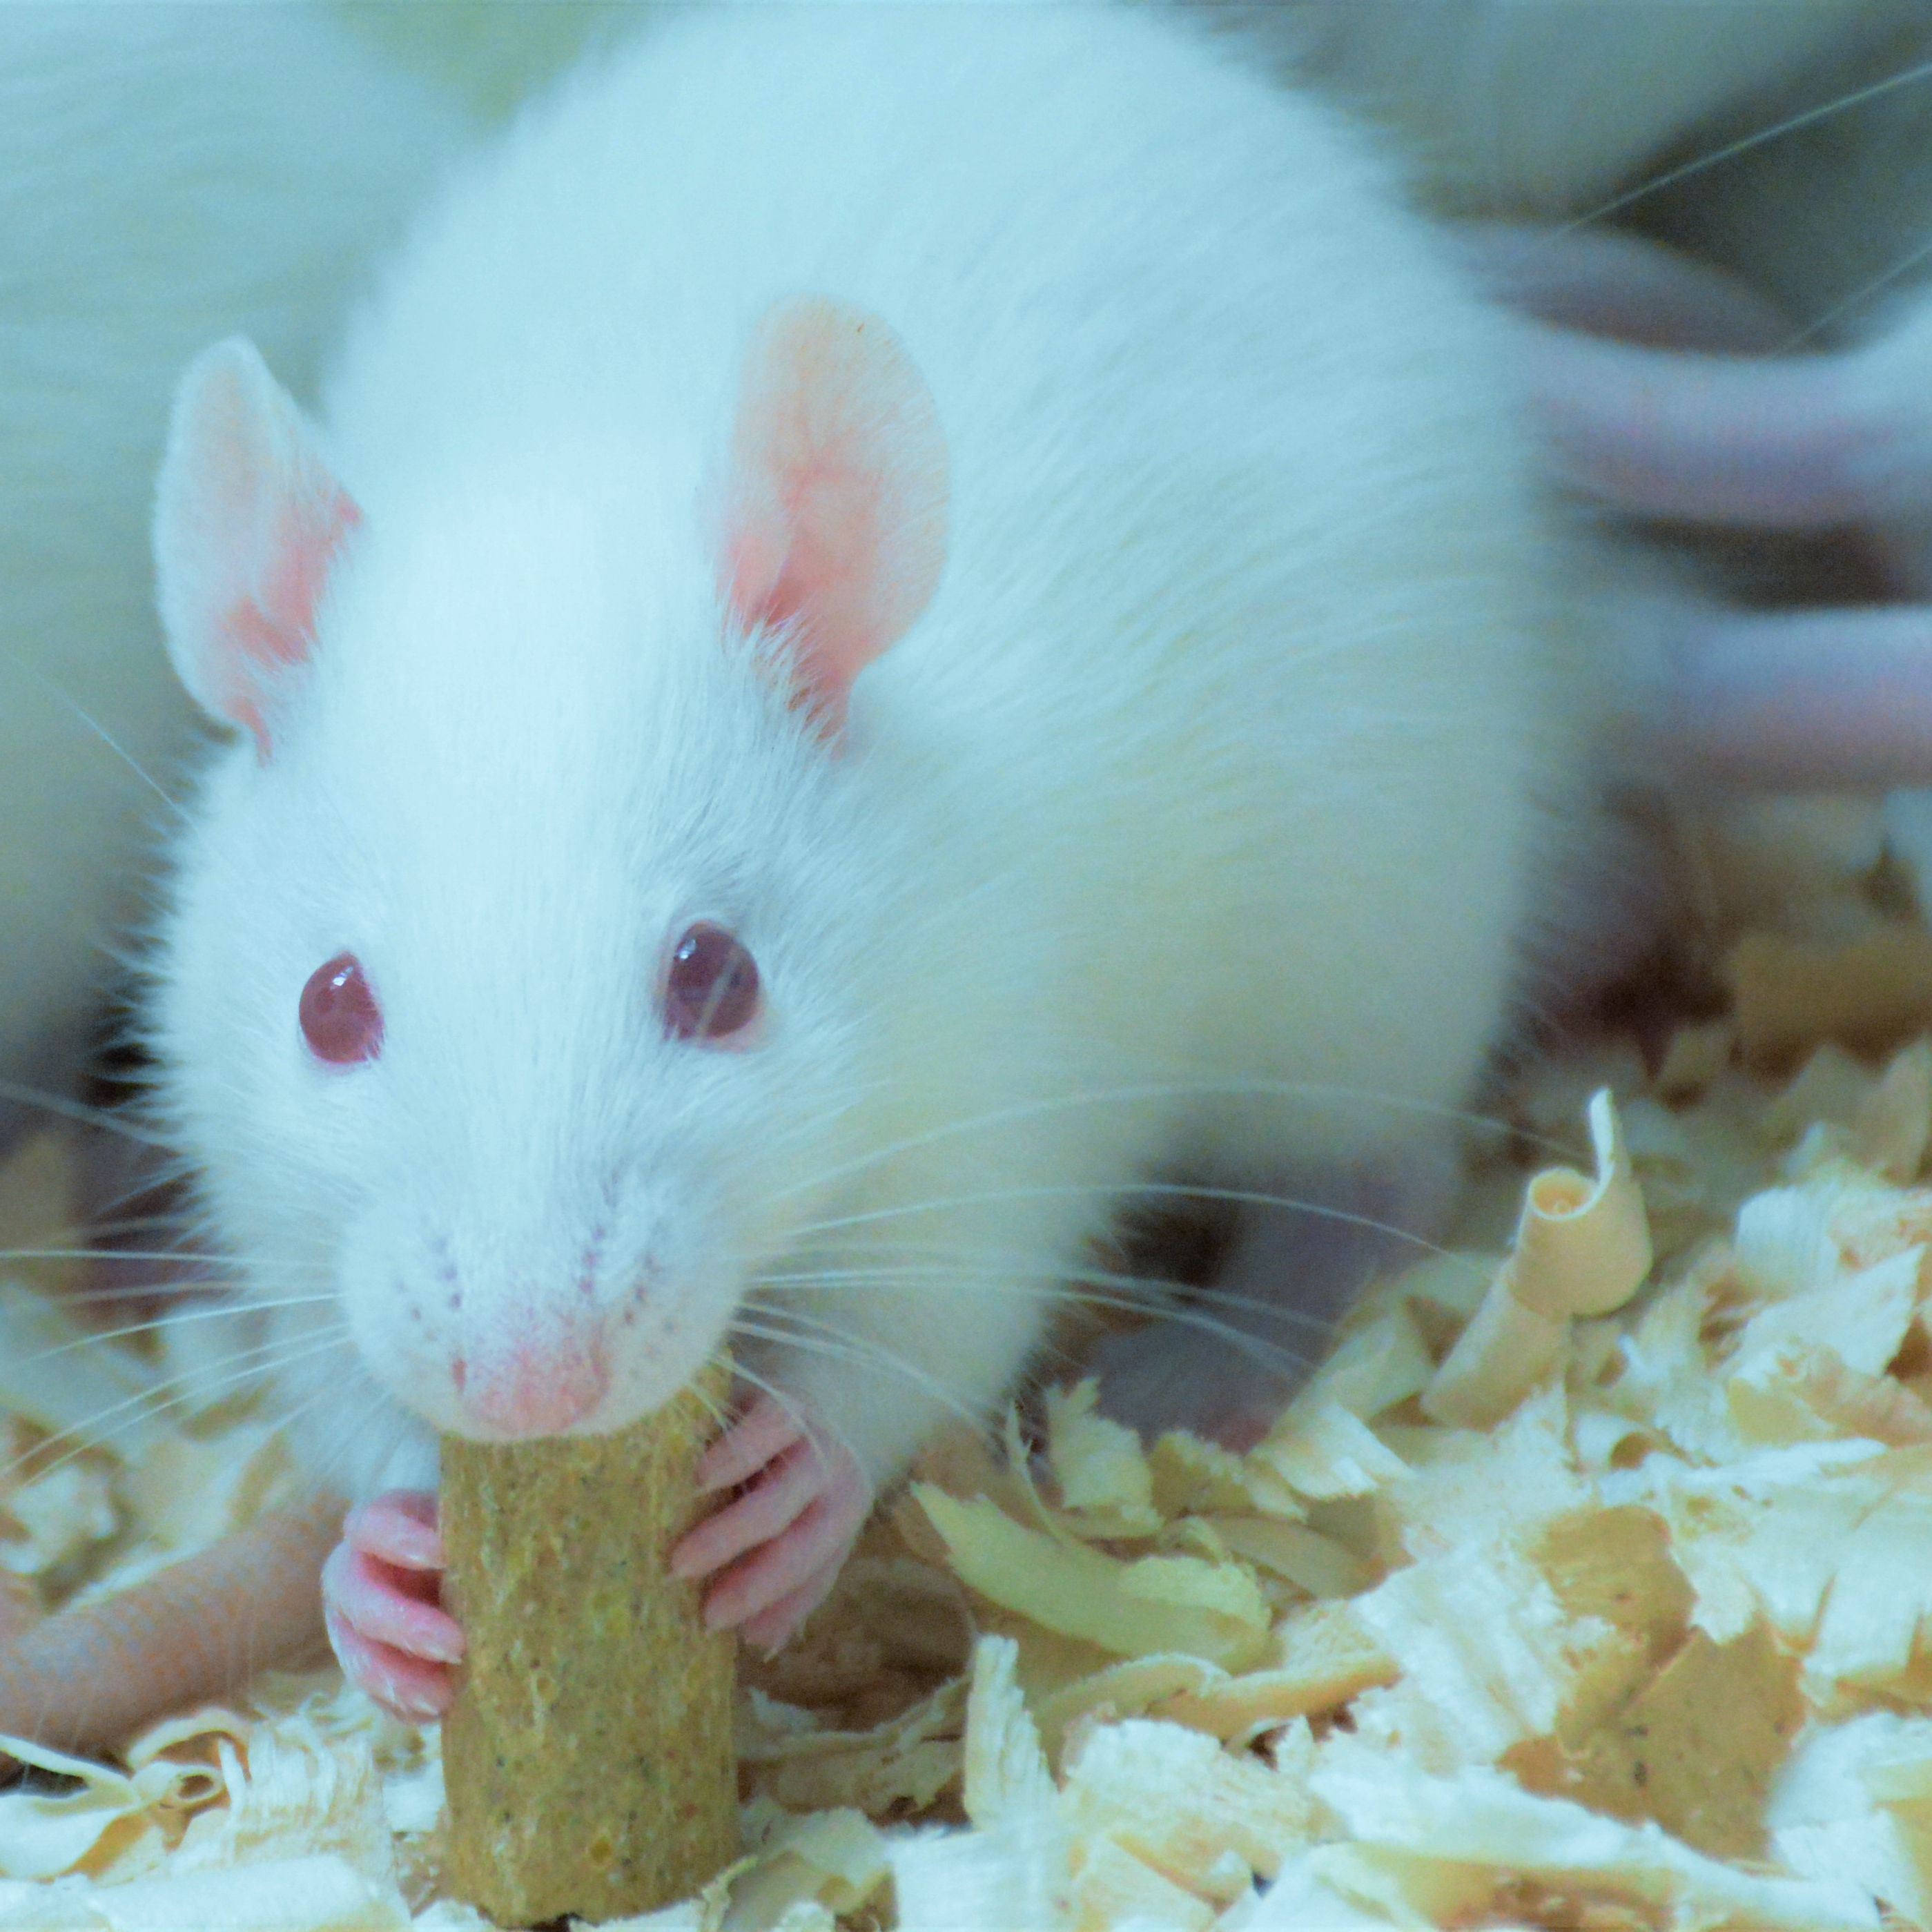 大小鼠尾静脉给药动物实验